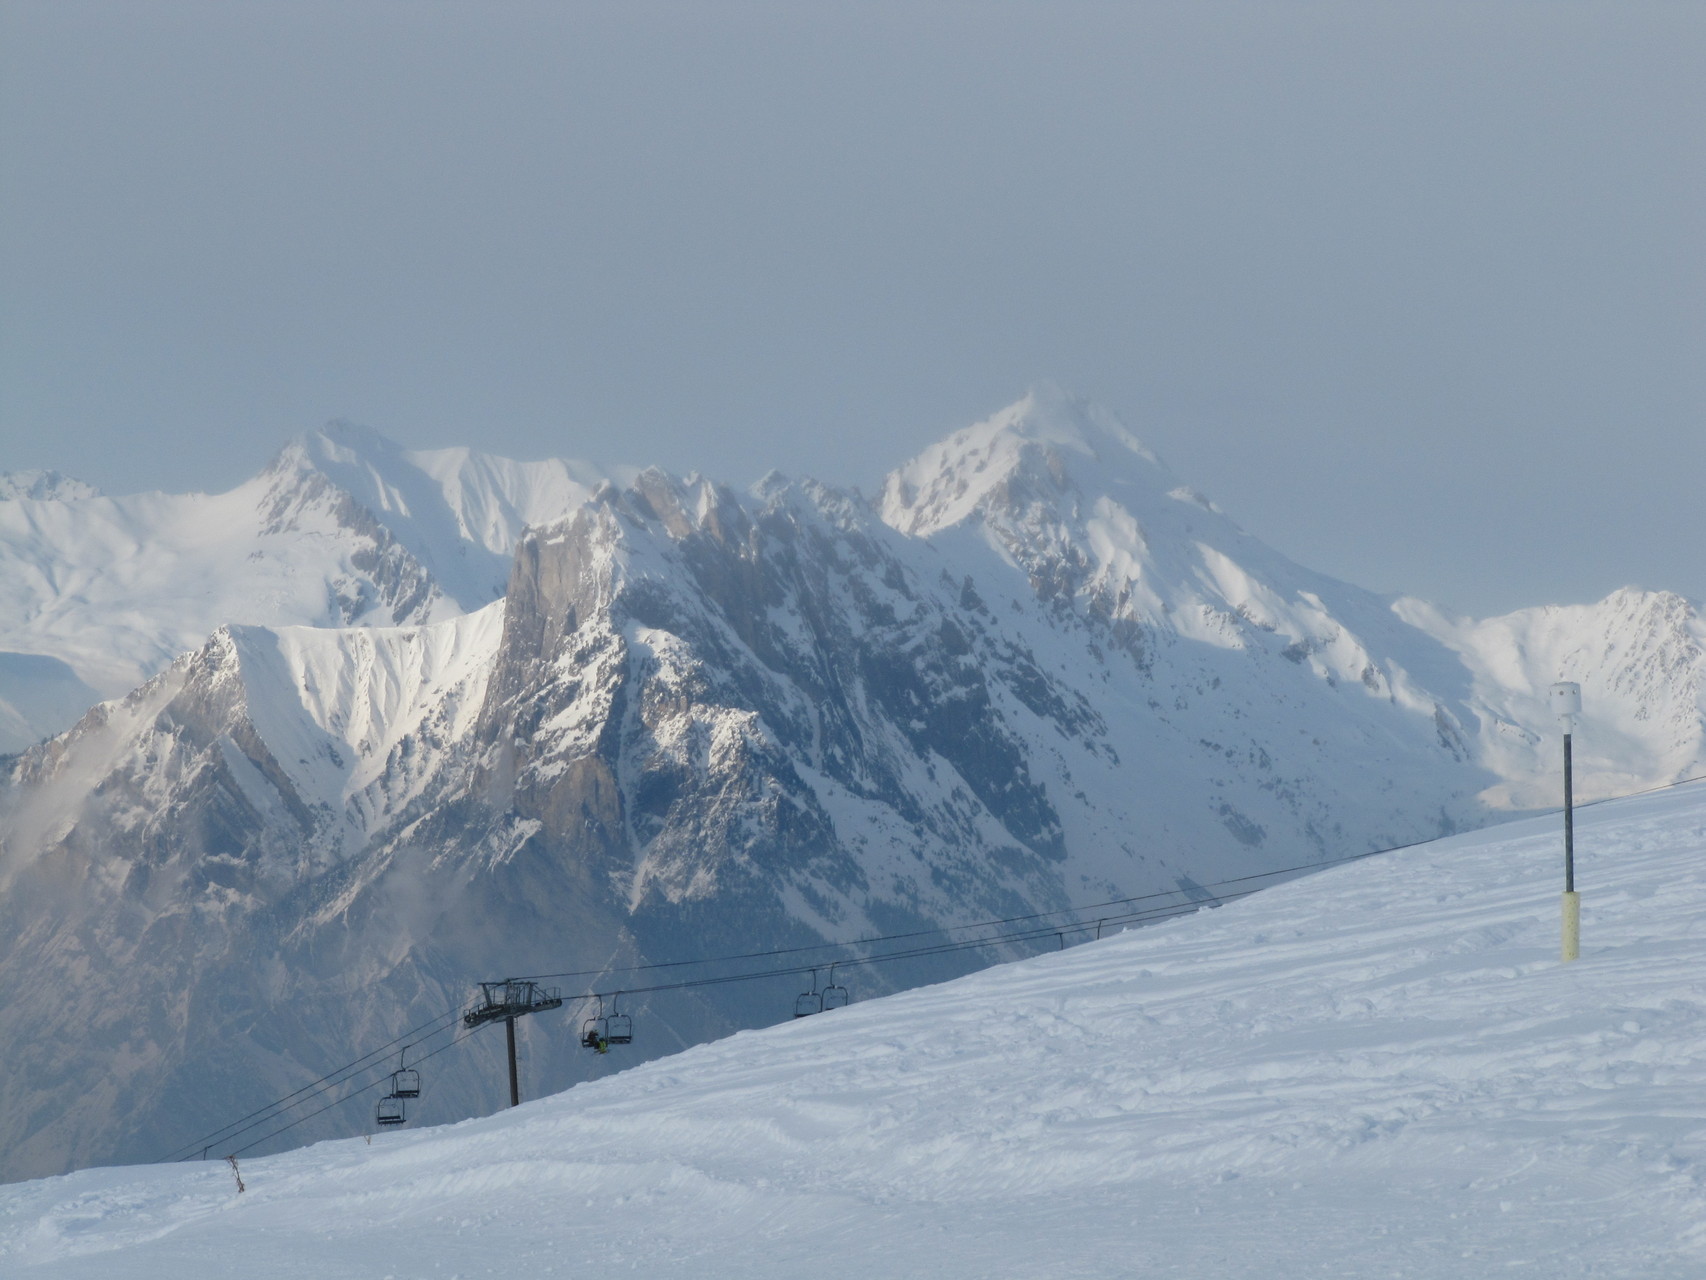 Domaine skiable Galibier - Thabor